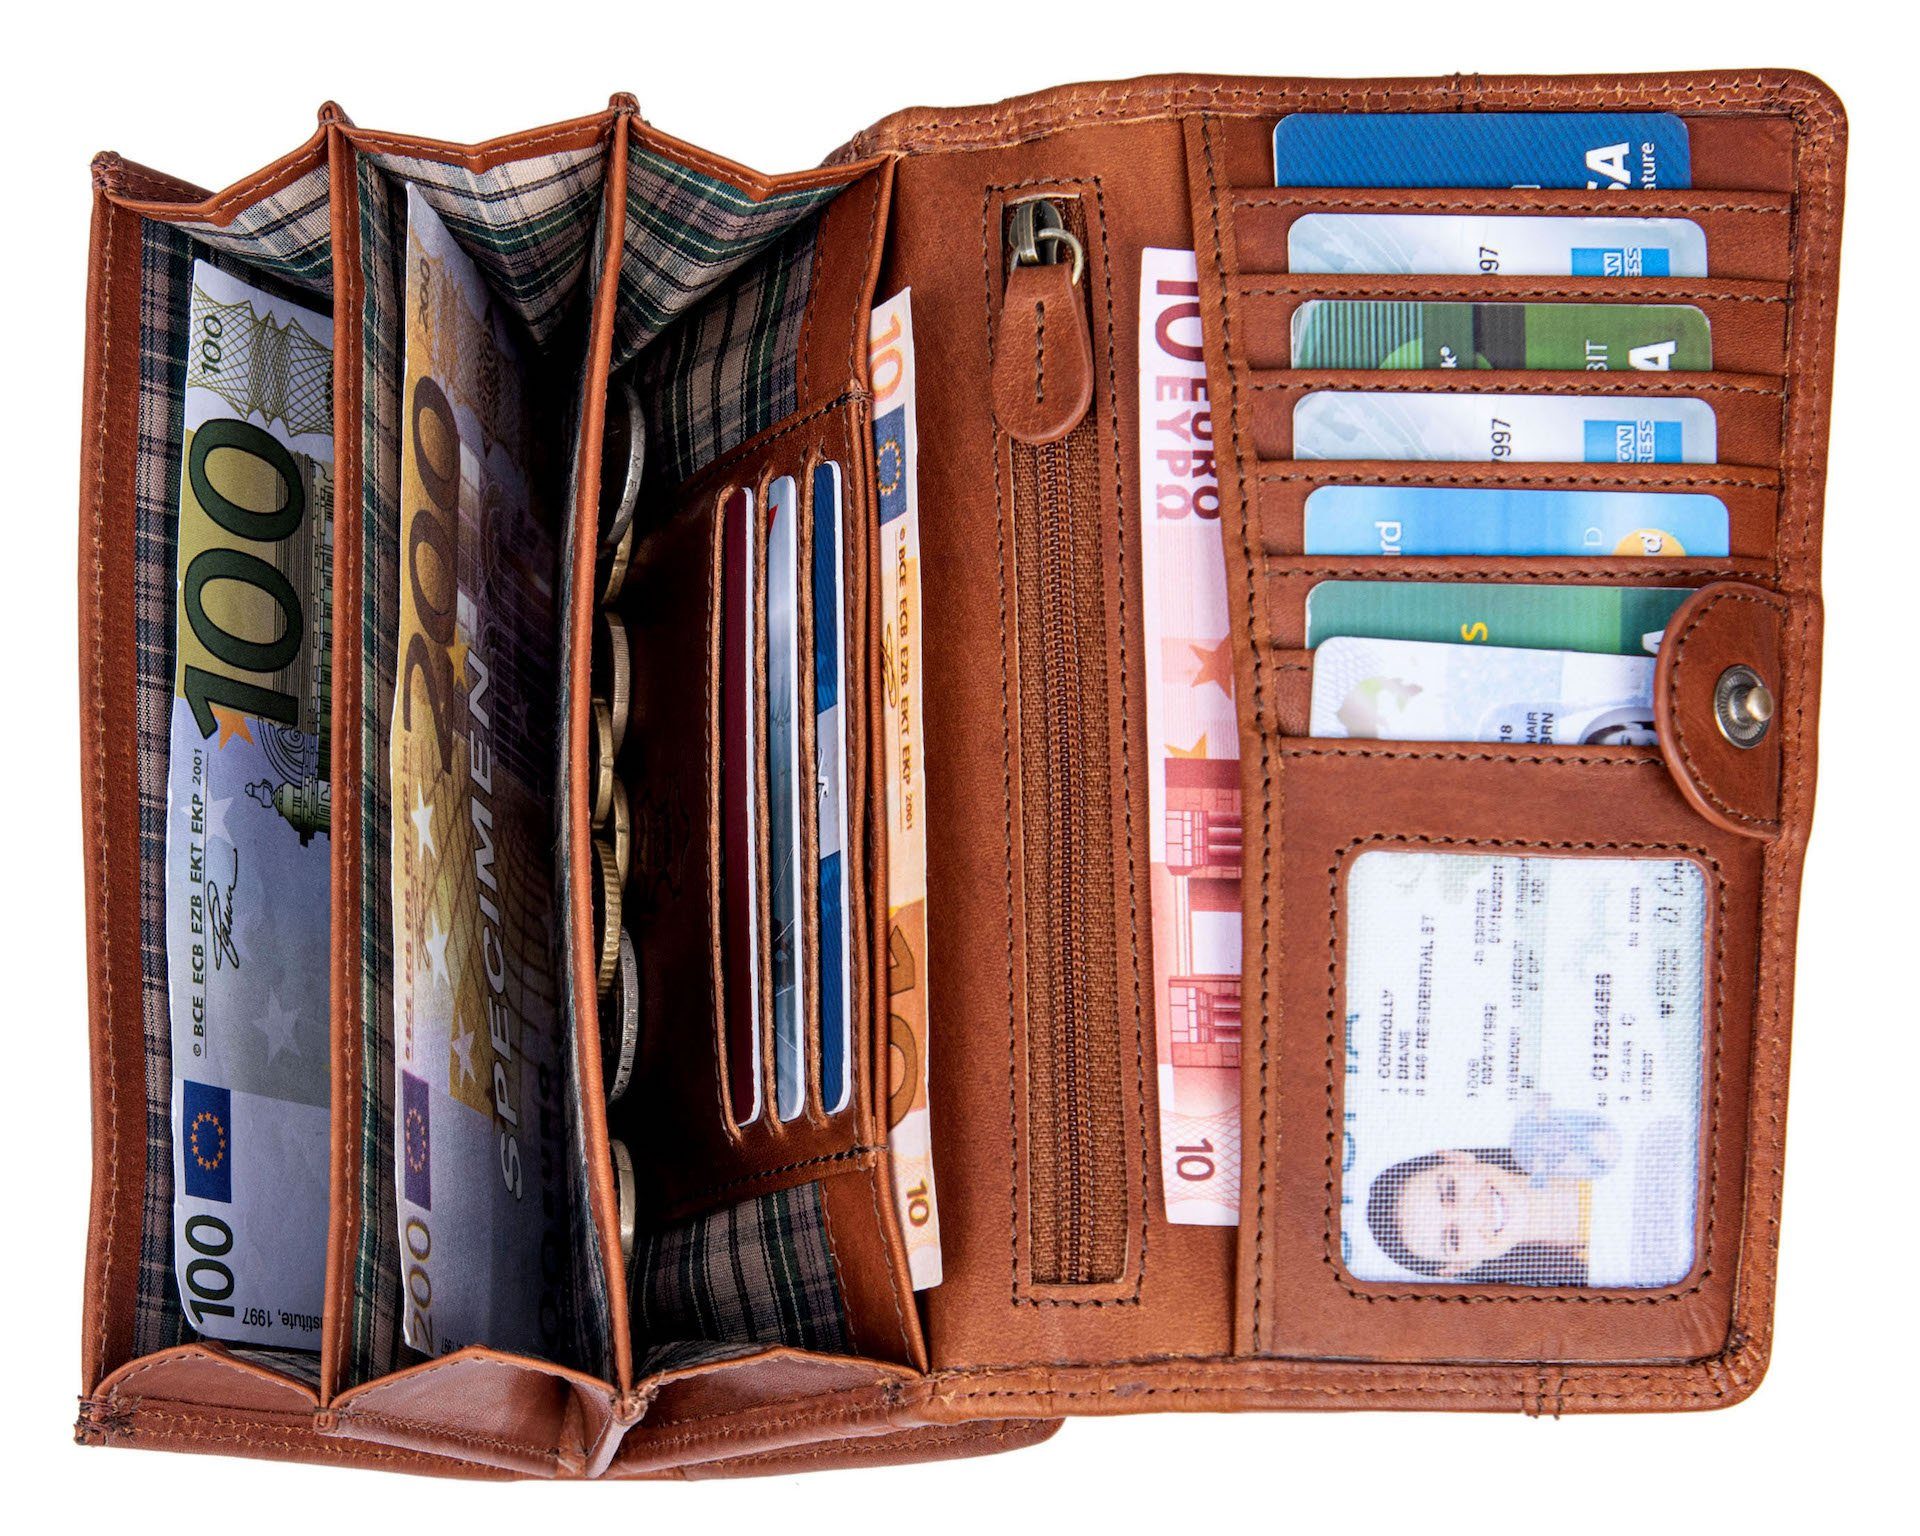 Münzfach RFID-Schutz vielen Braun Portemonnaie Reißverschlussfach Benthill RFID, Leder Kartenfächer Geldbeutel Kartenfächer Damen Echt Groß Geldbörse